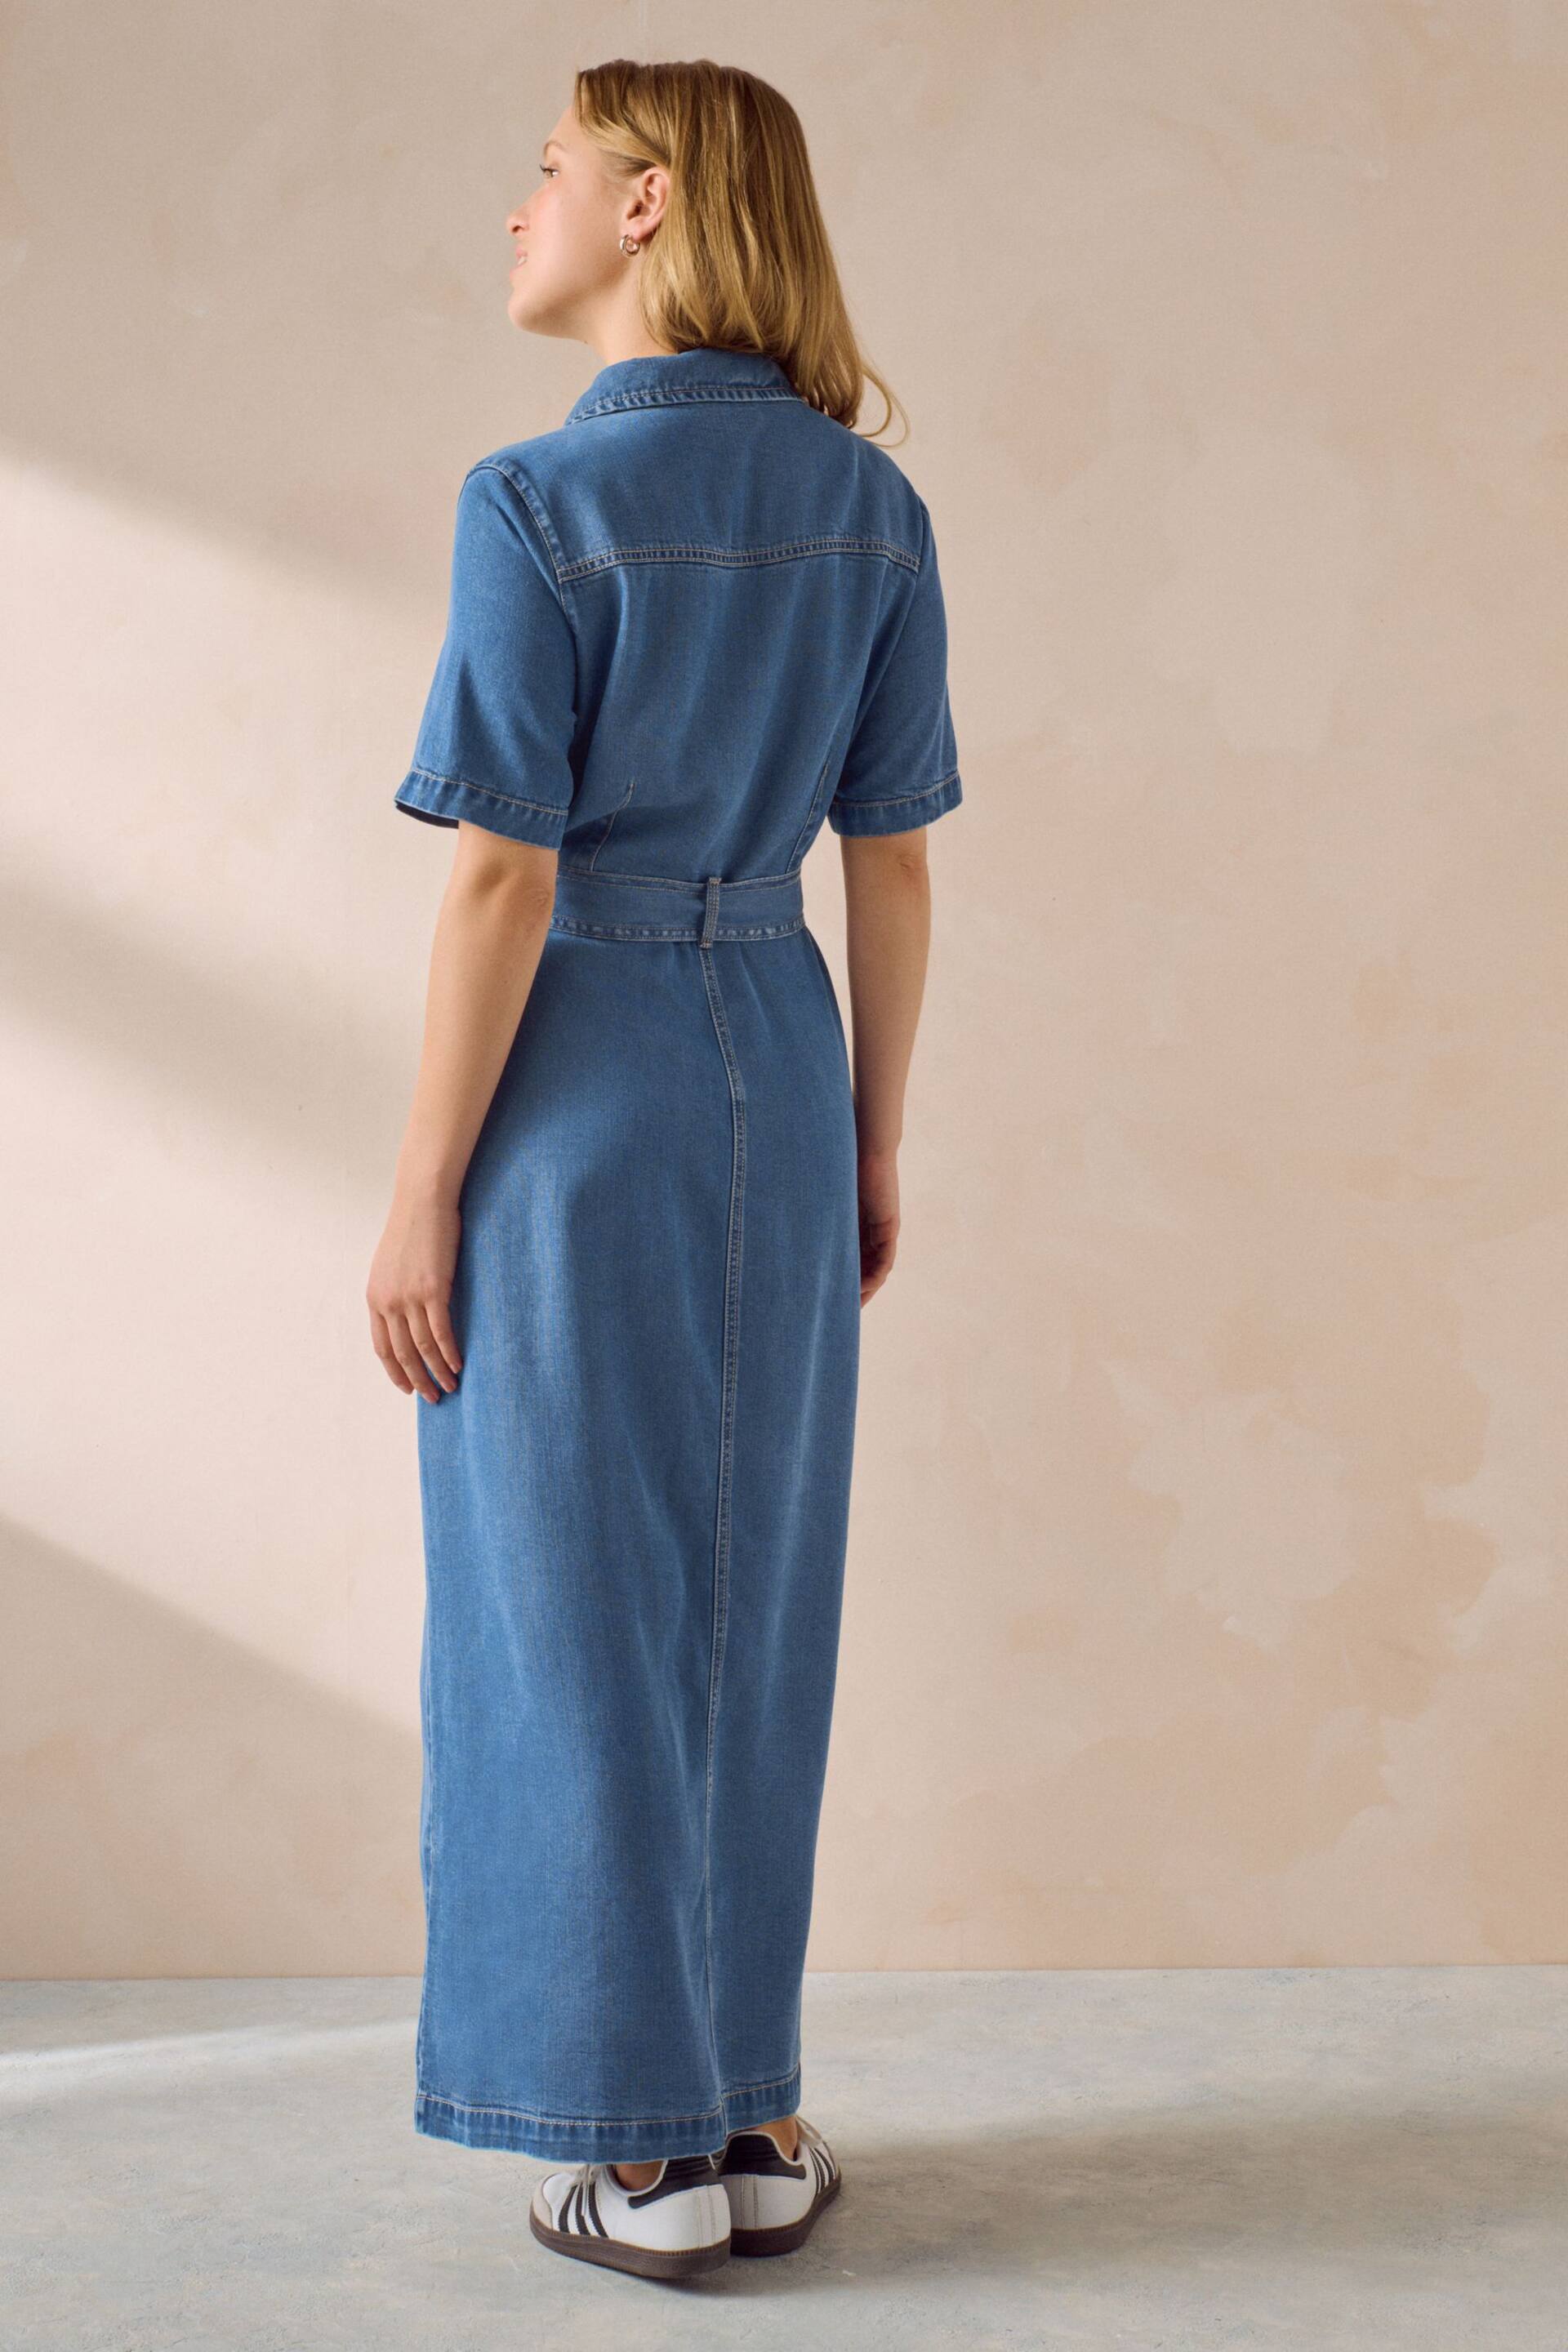 Mid Blue Fuller Bust Button Through Denim Summer Dress - Image 2 of 5